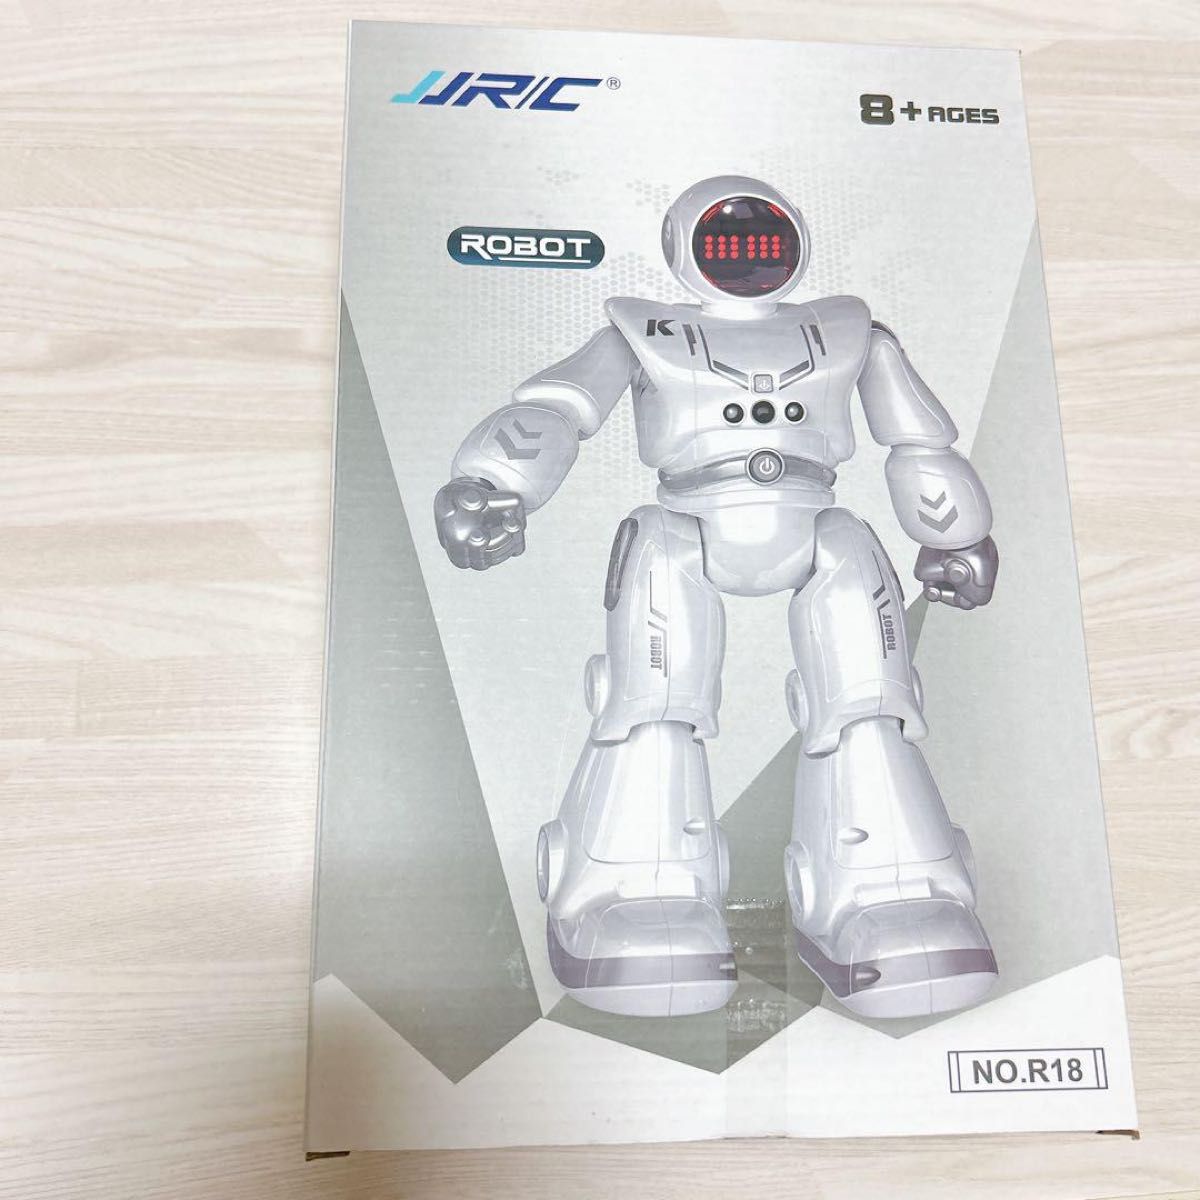 ロボットプラザ (ROBOT PLAZA) 人型ロボット おもちゃ 歩く 男の子 トイ ロボット